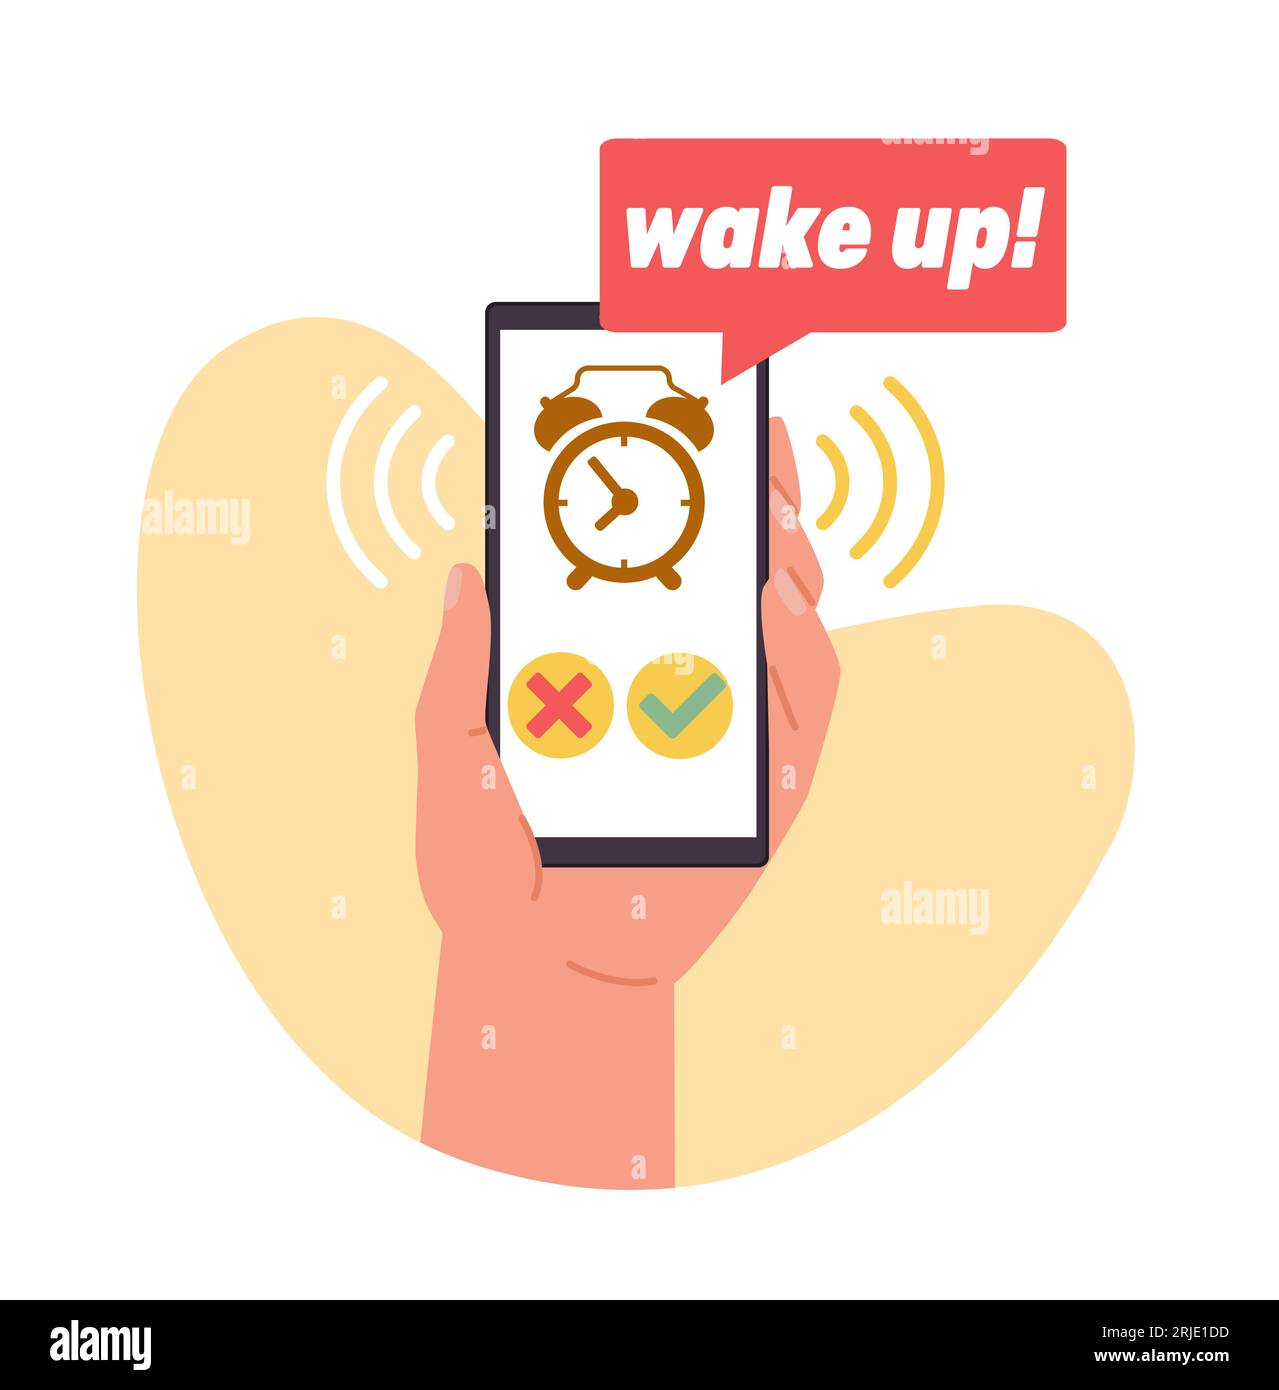 Réveil dans votre téléphone portable vous donne le réveil par téléphone. Tenir la main smartphone avec minuterie de réveil avec cloche sur l'écran de l'appareil. Conception des applications Illustration de Vecteur